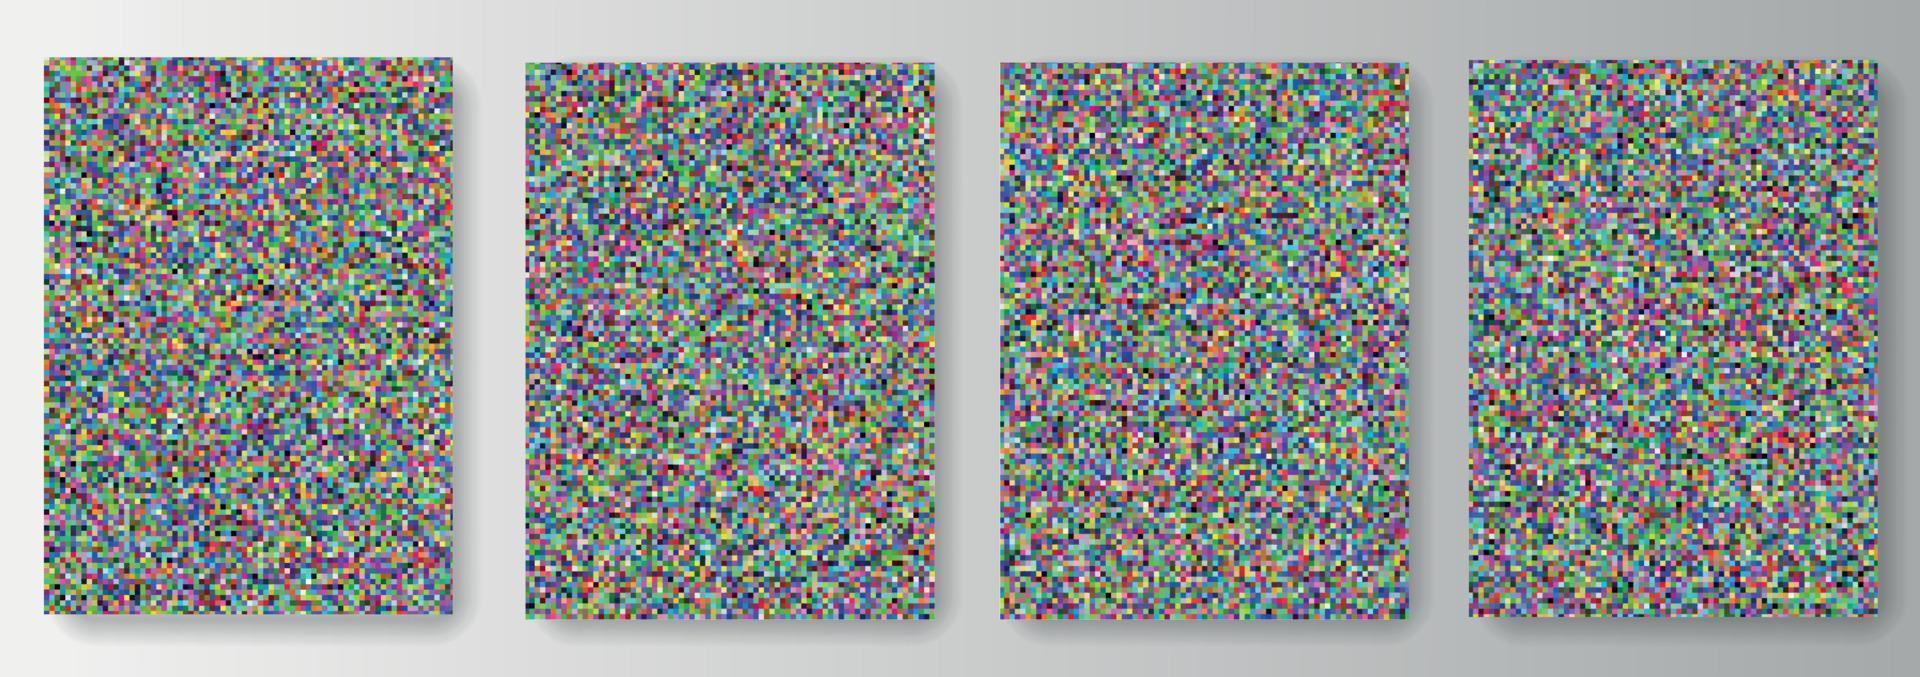 Sammlung von Hintergründen aus bunten Pixelquadraten. nahtloses Muster vektor